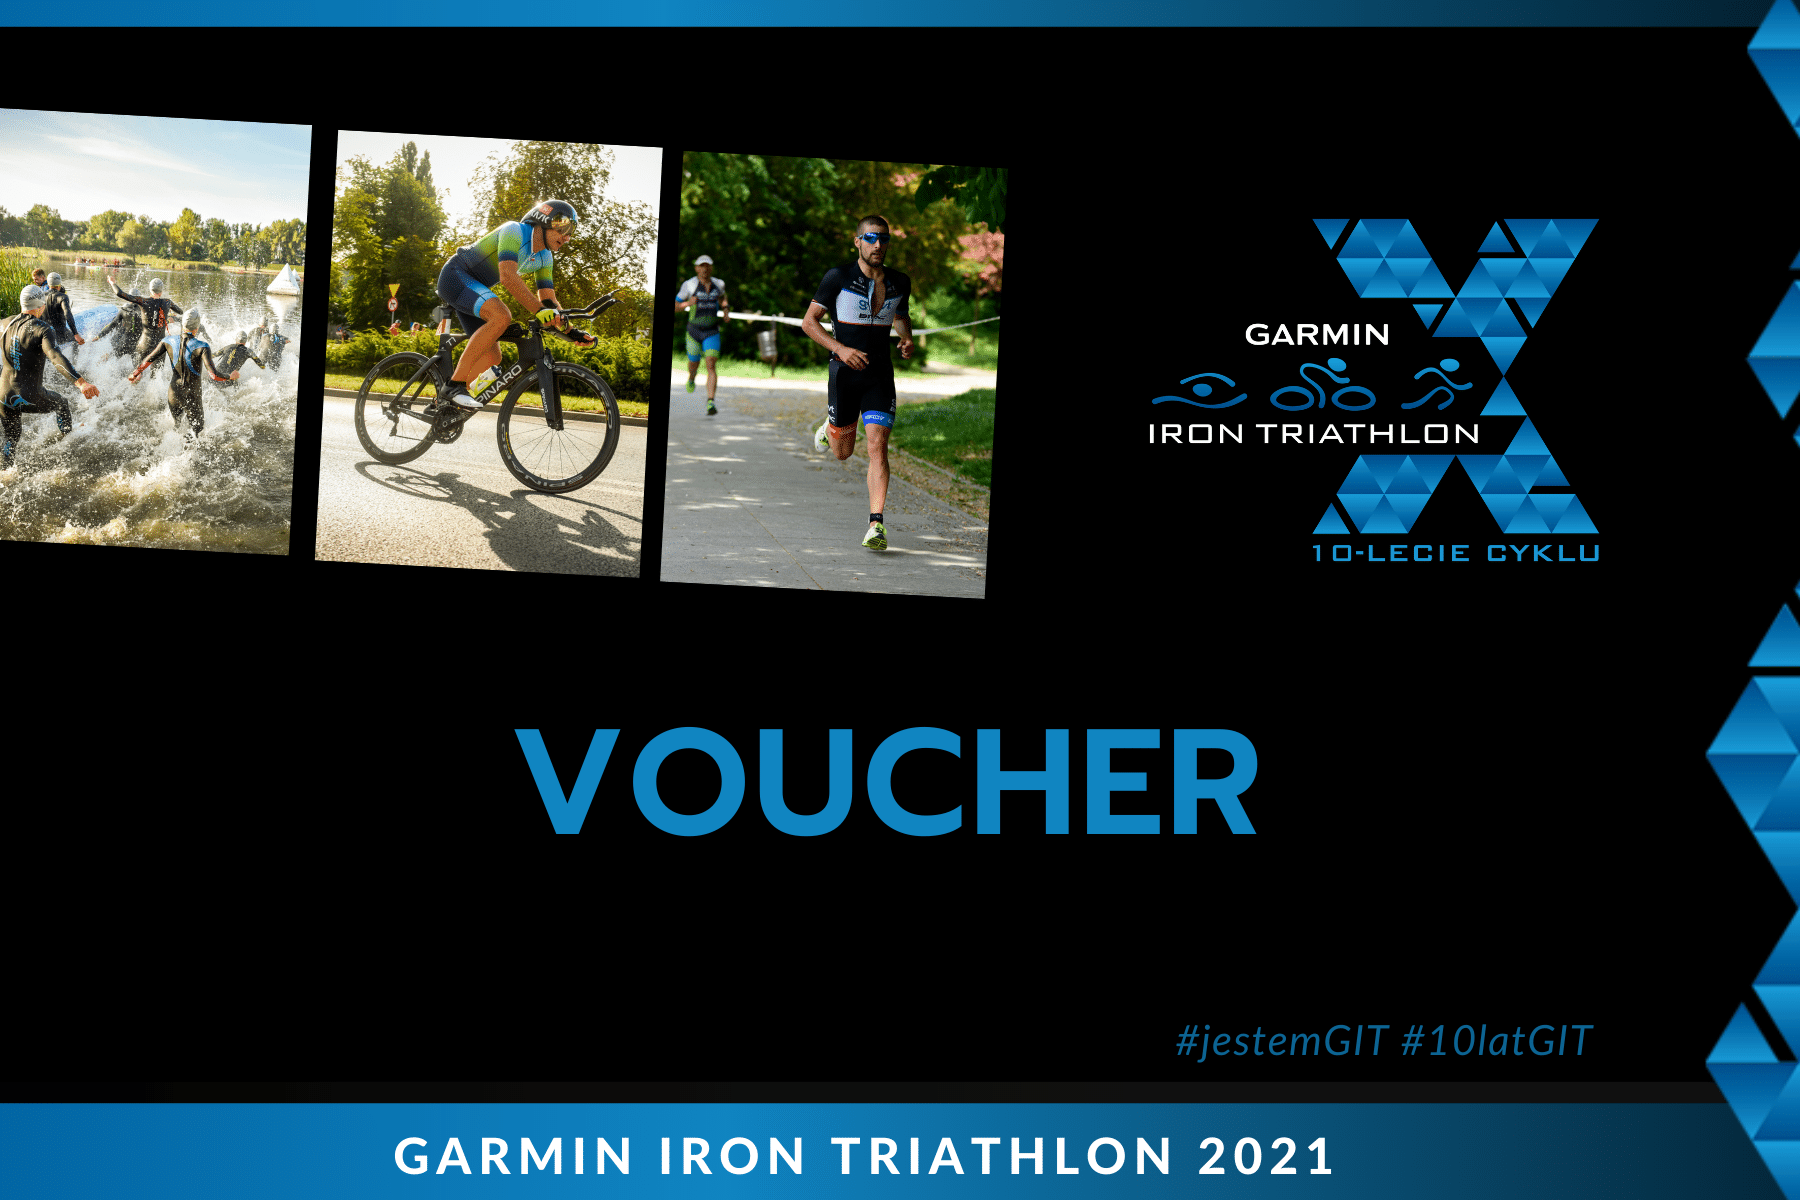 voucher_2021_garmin_iron_triathlon